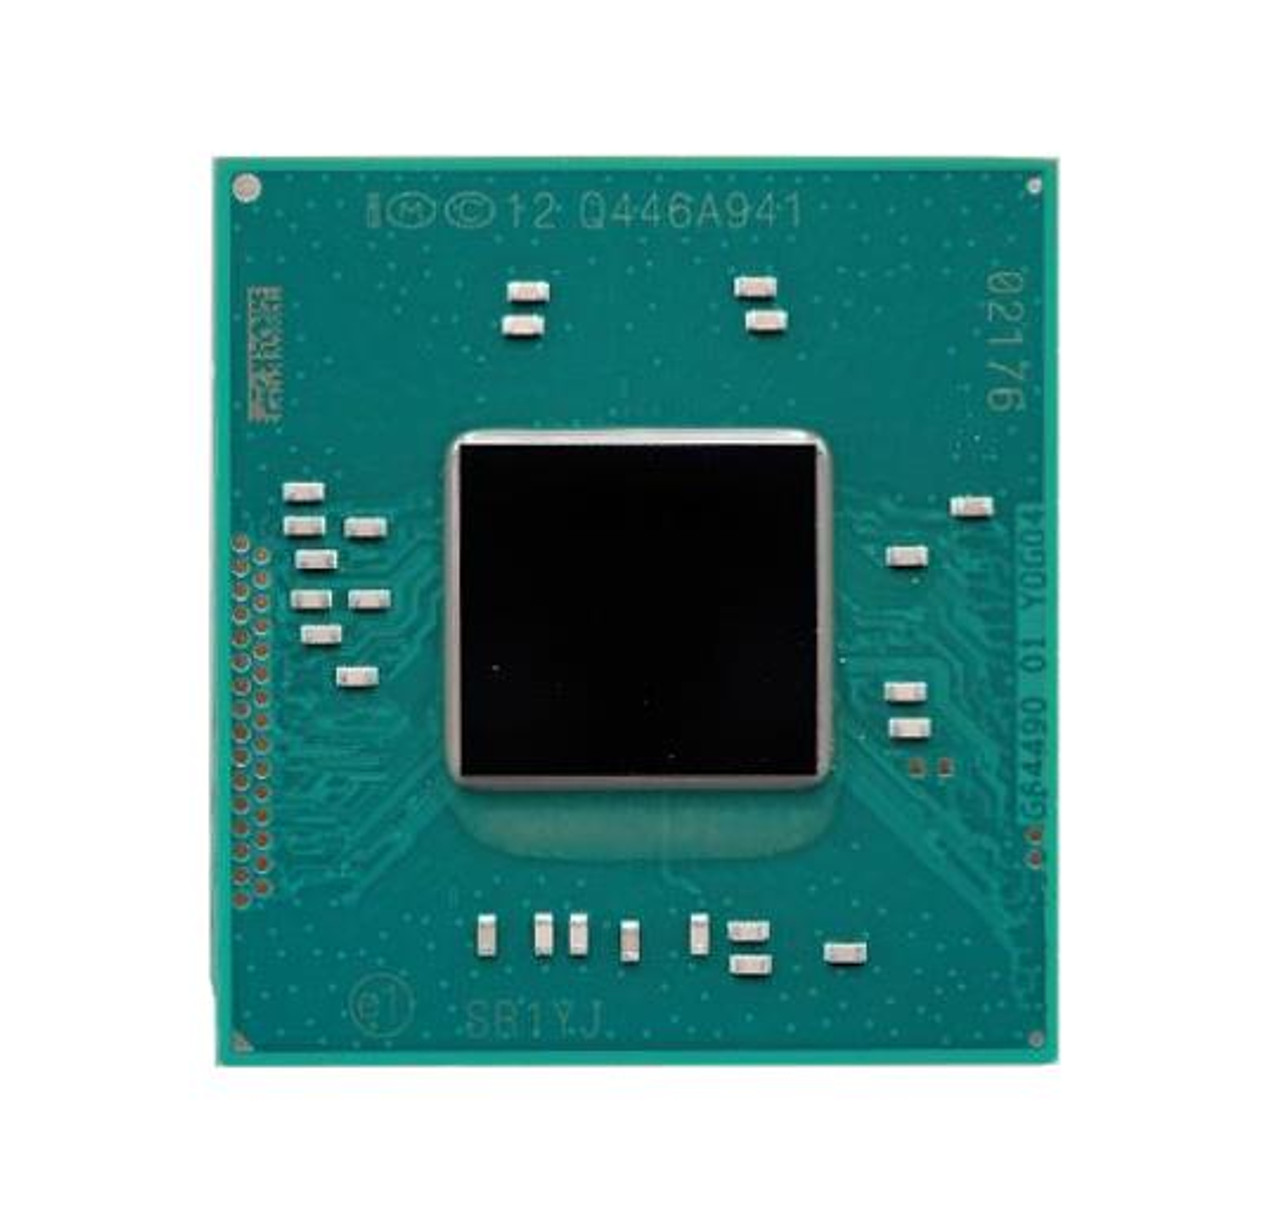 Dell 2.16GHz 1MB L2 Cache Intel Celeron N2840 Dual-Core Mobile Processor Upgrade